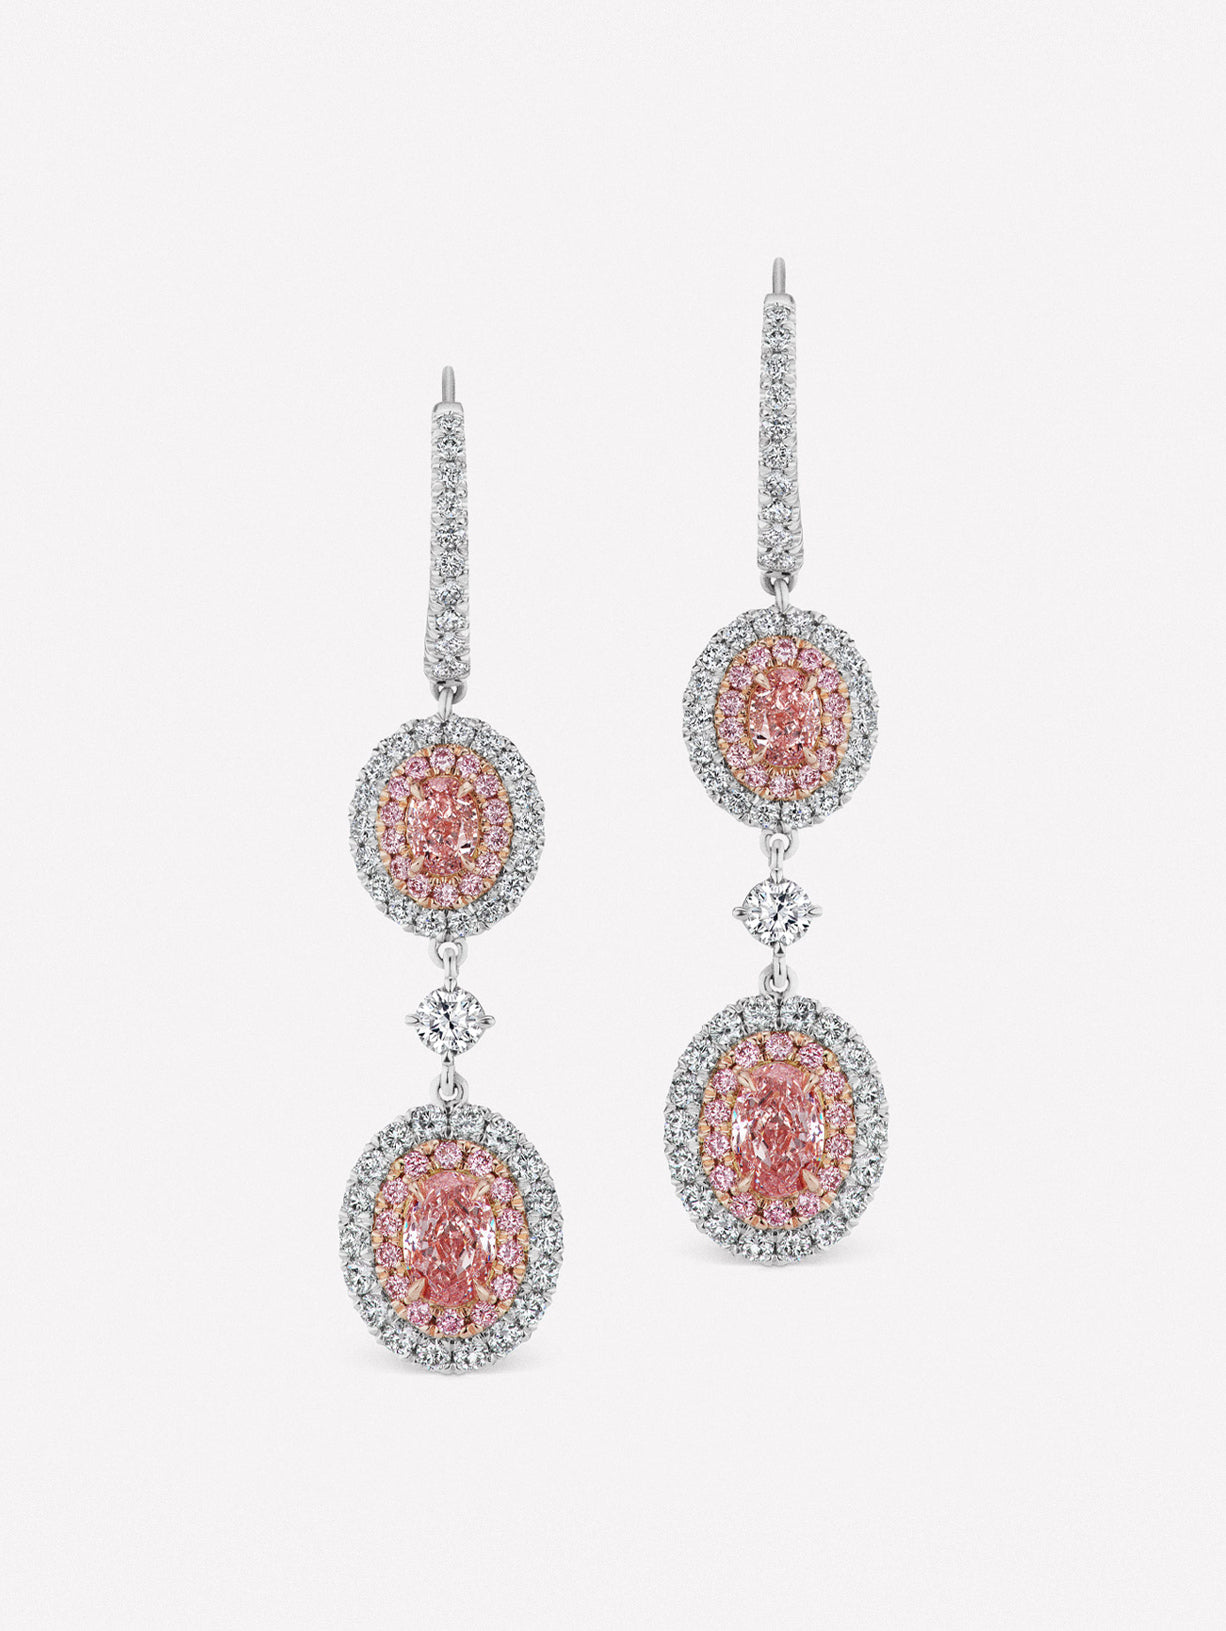 Fancy Pink Diamond Oval Drop Earrings II - Pink Diamonds, J FINE - J Fine, Earrings - Pink Diamond Jewelry, fancy-pink-diamond-oval-drop-earrings-ii-by-j-fine - Argyle Pink Diamonds